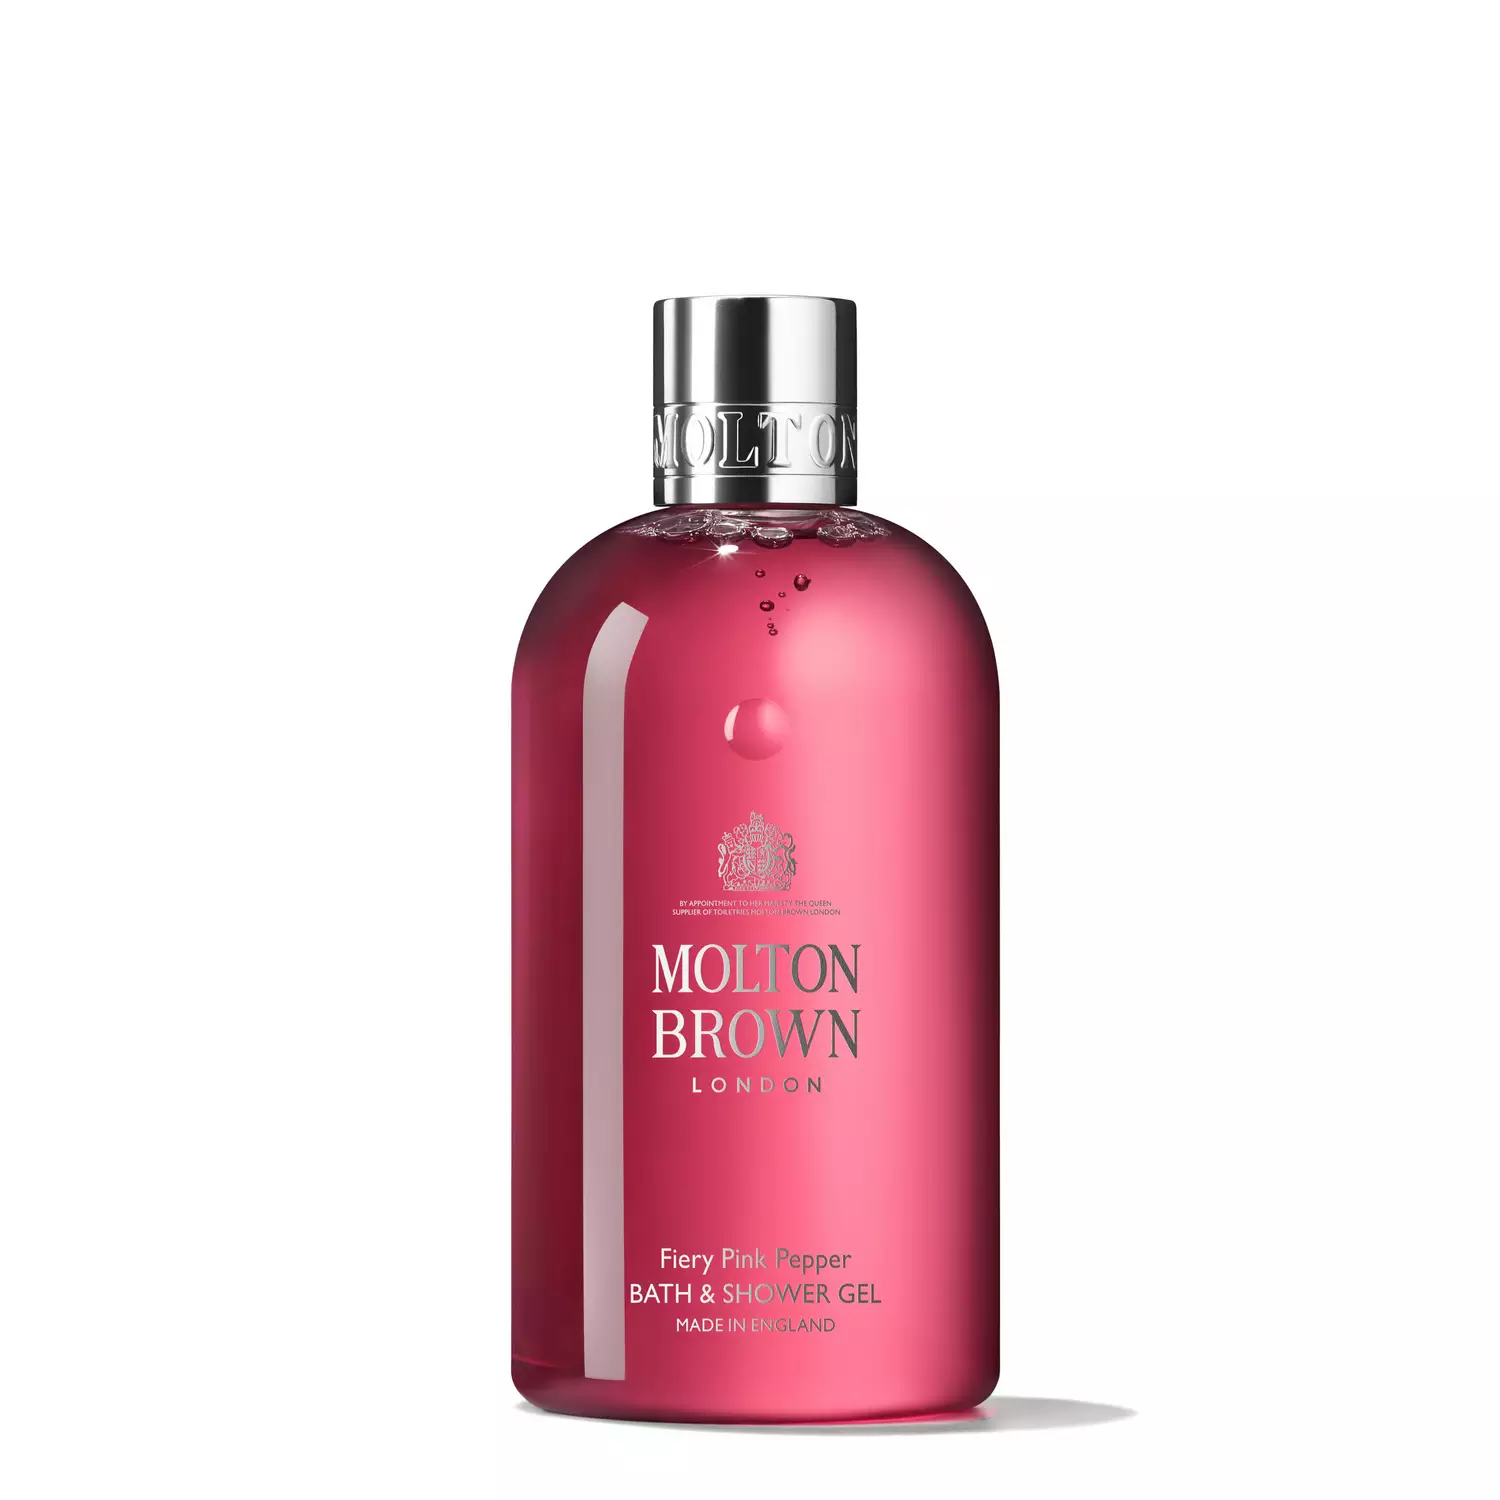 Molton Brown - Fiery Pink Pepper - Bath & Shower Gel 